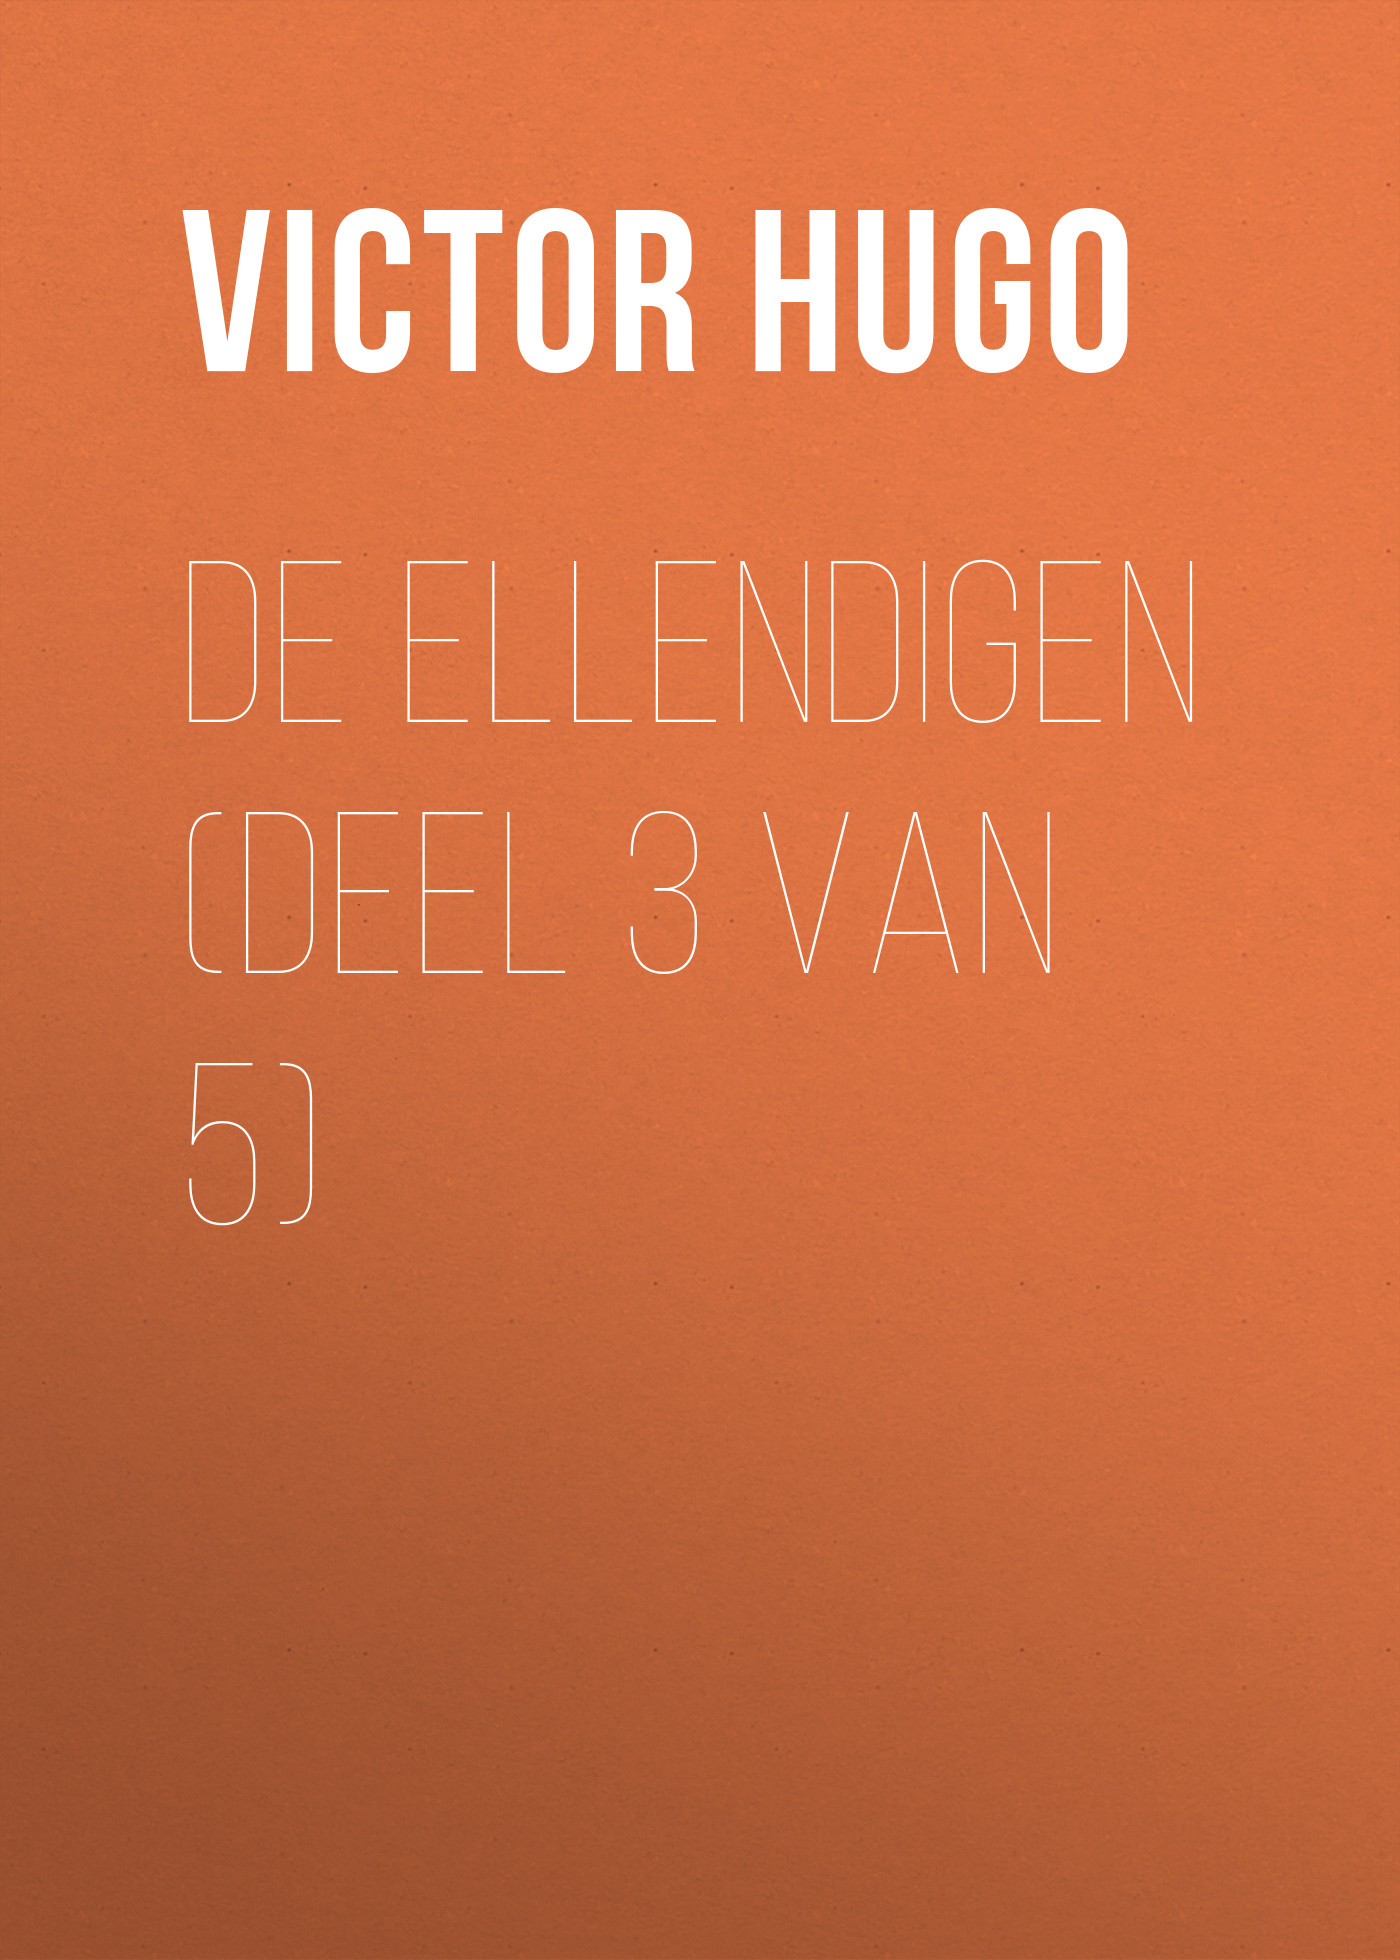 Книга De Ellendigen (Deel 3 van 5) из серии , созданная Victor Hugo, может относится к жанру Литература 19 века, Зарубежная старинная литература, Зарубежная классика. Стоимость электронной книги De Ellendigen (Deel 3 van 5) с идентификатором 25230156 составляет 0 руб.